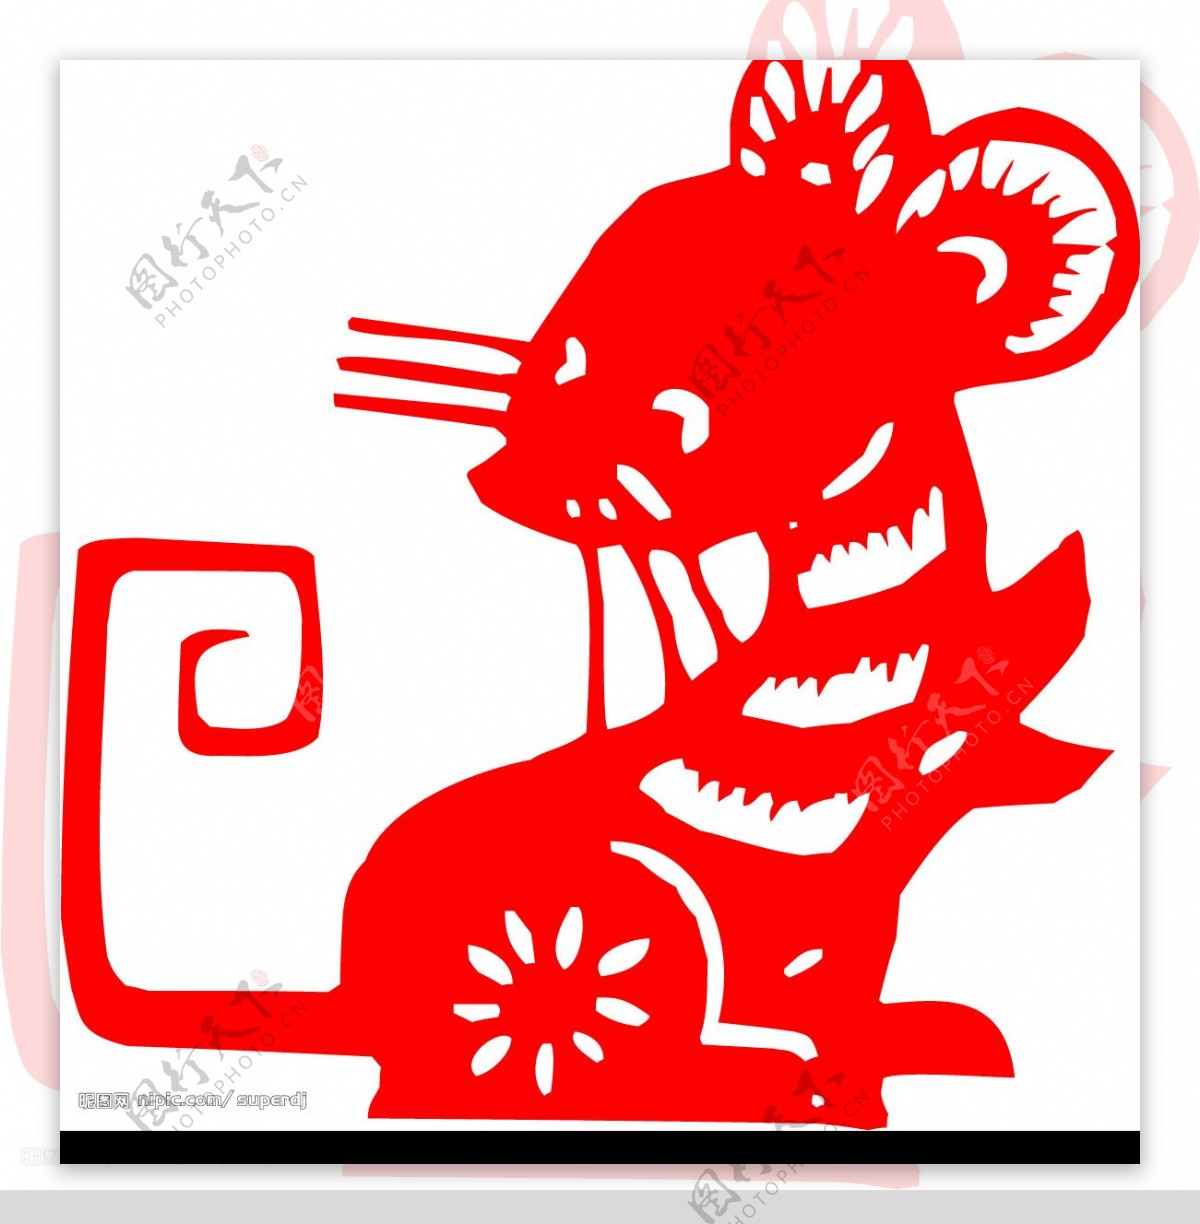 中国传统剪纸图片